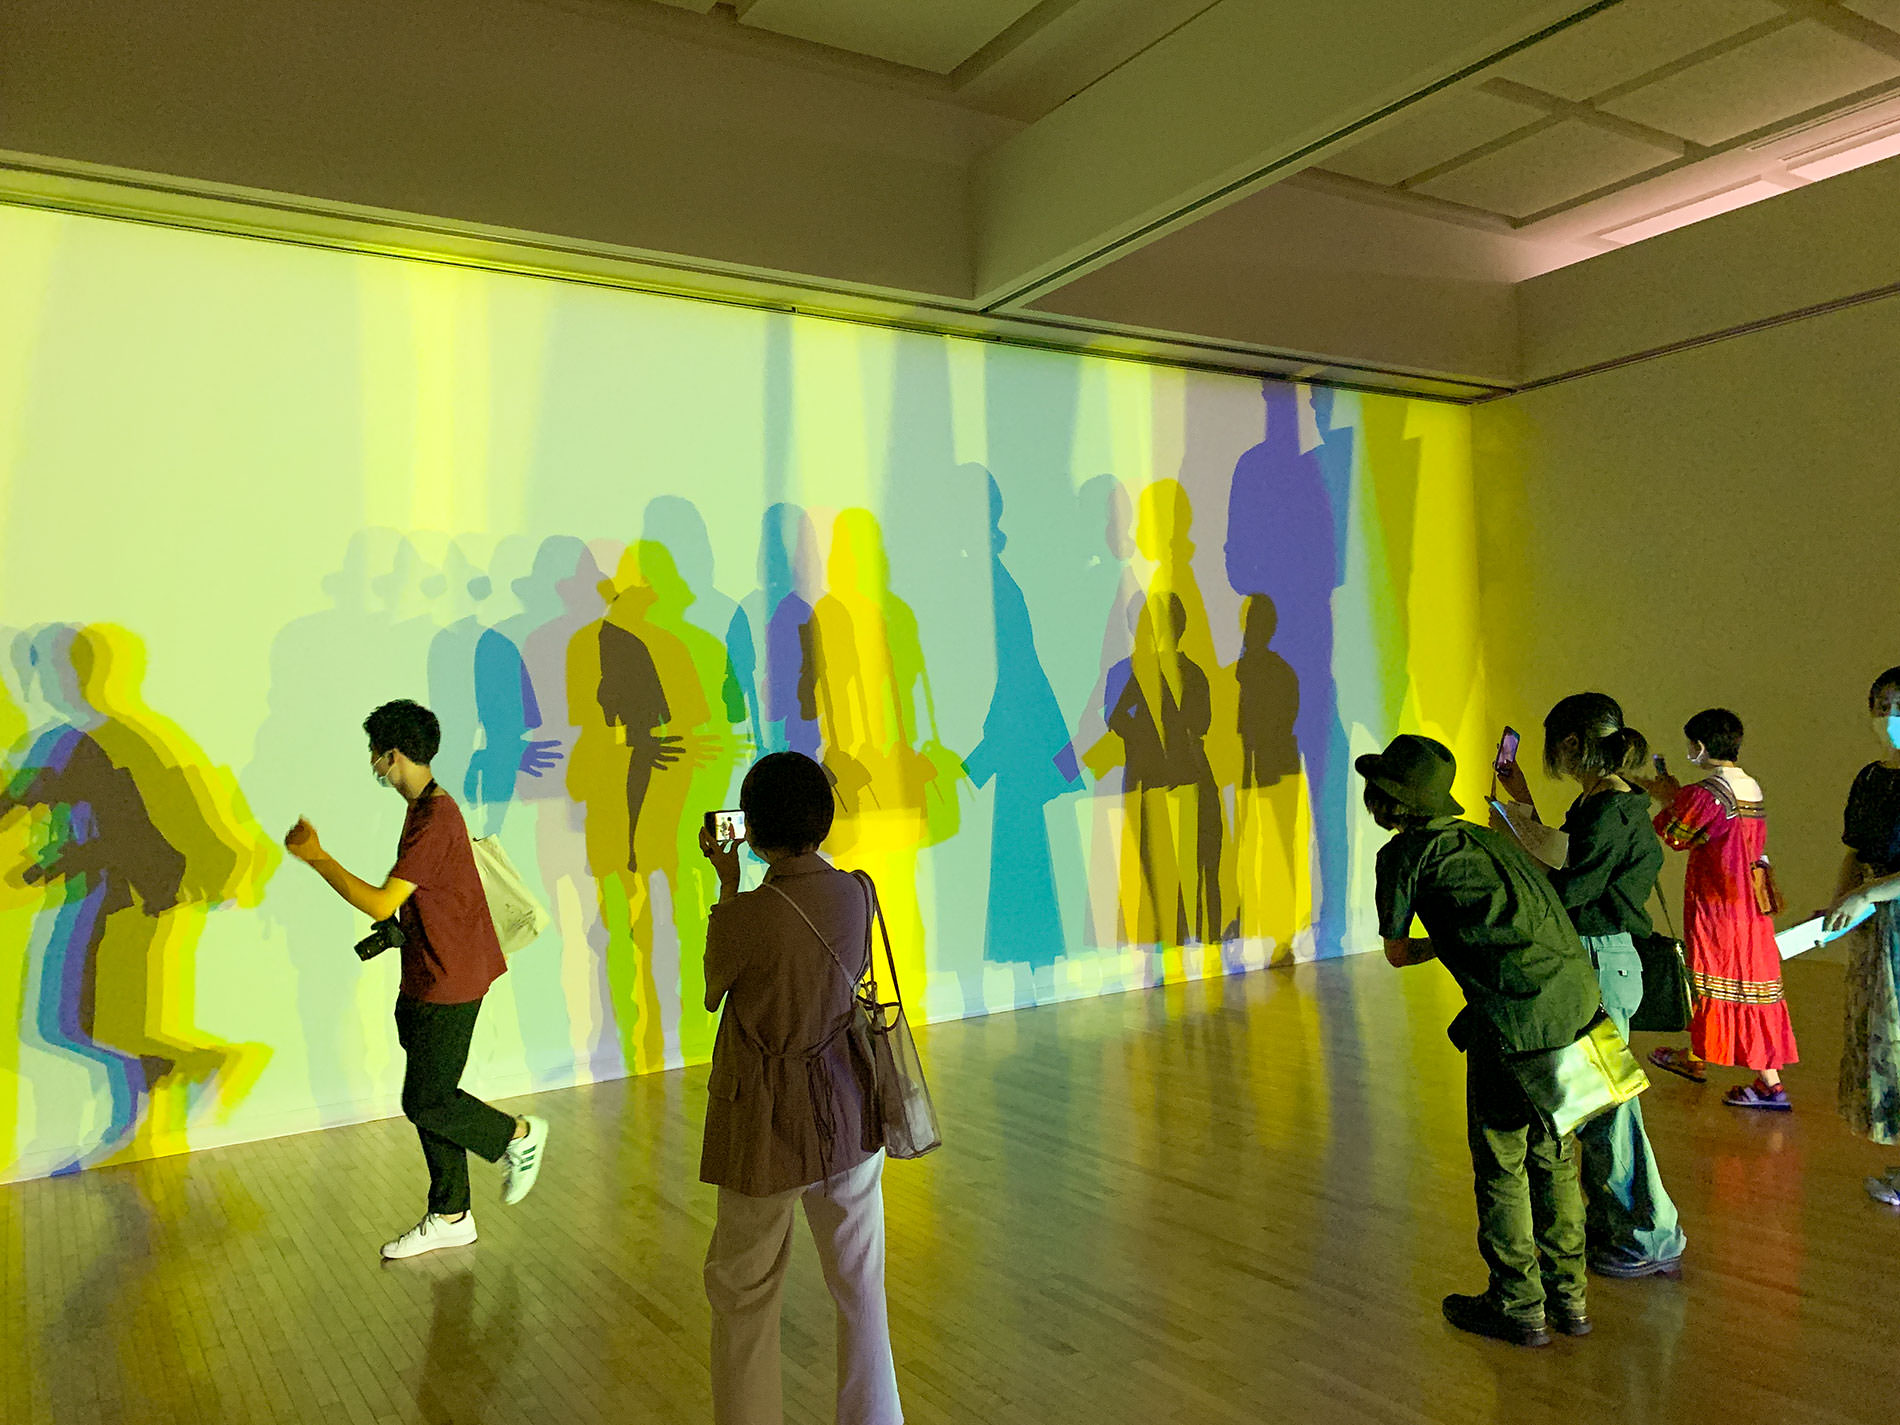 オラファー・エリアソン 「ときに川は橋となる」展 | あなたに今起きていること、起きたこと、これから起きること |東京都現代美術館 / Olafur Eliasson | Your happening, has happed, will happen | MUSEUM OF CONTEMPORARY ART TOKYO 2020